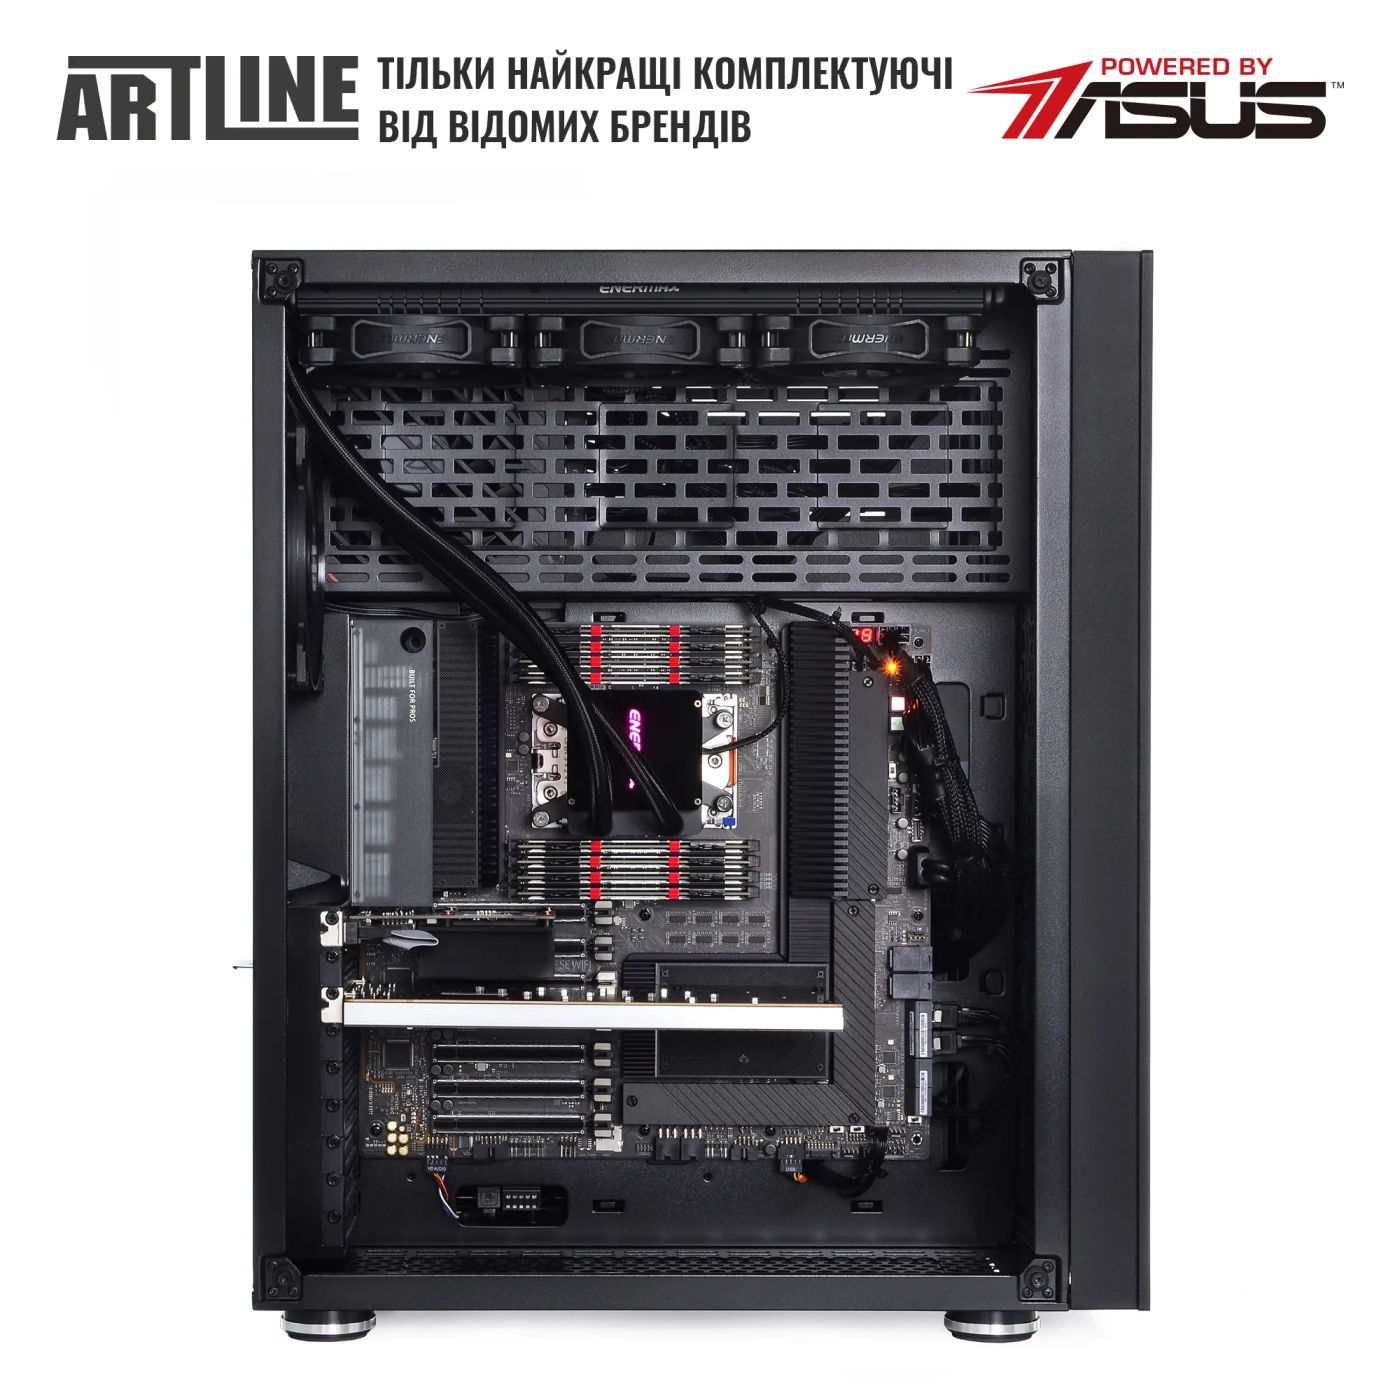 Купить Сервер ARTLINE Business T85v07 - фото 5